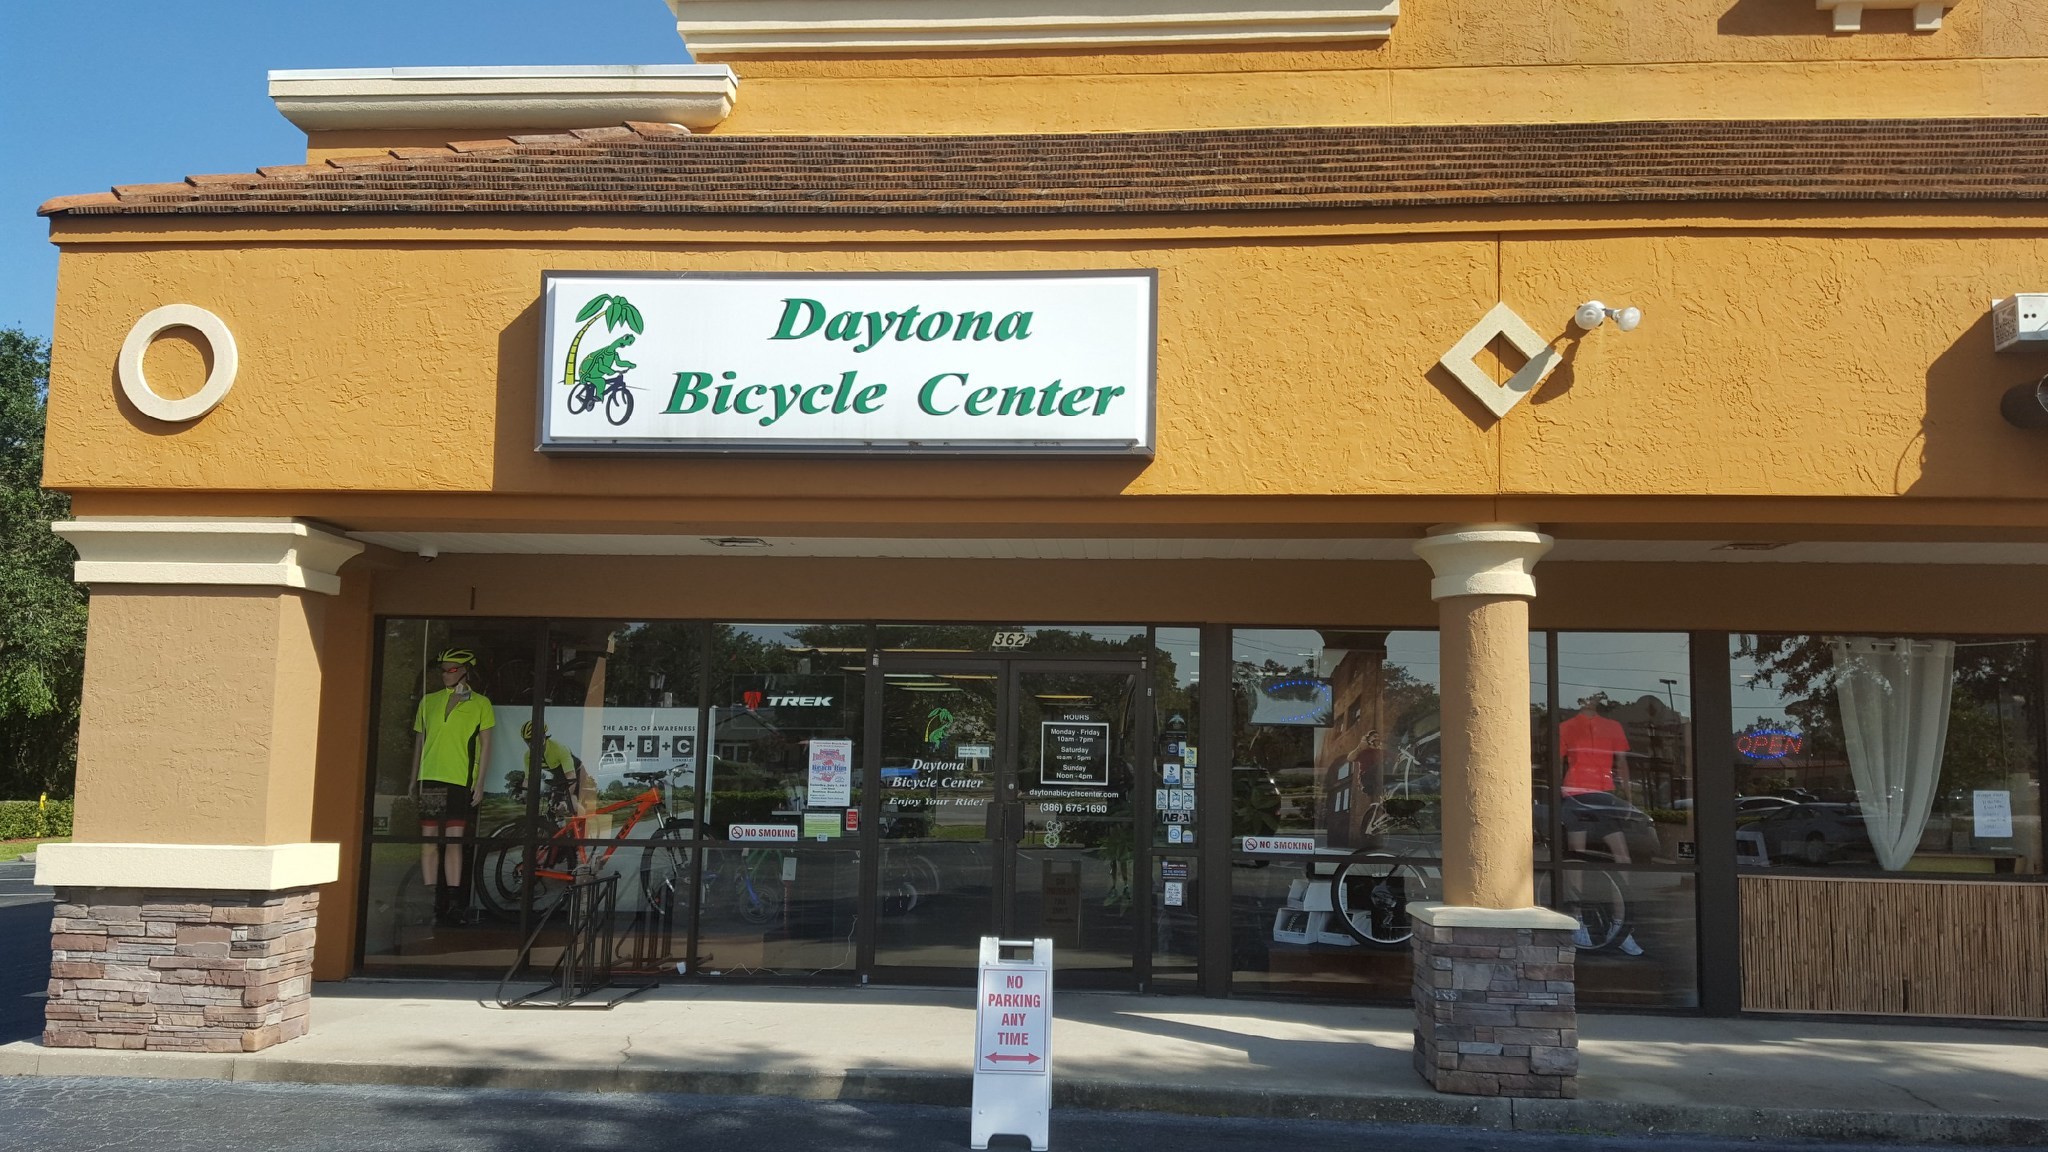 Sanborn purchased Trek dealer Daytona Bicycle Center in Daytona Beach, Florida in June.